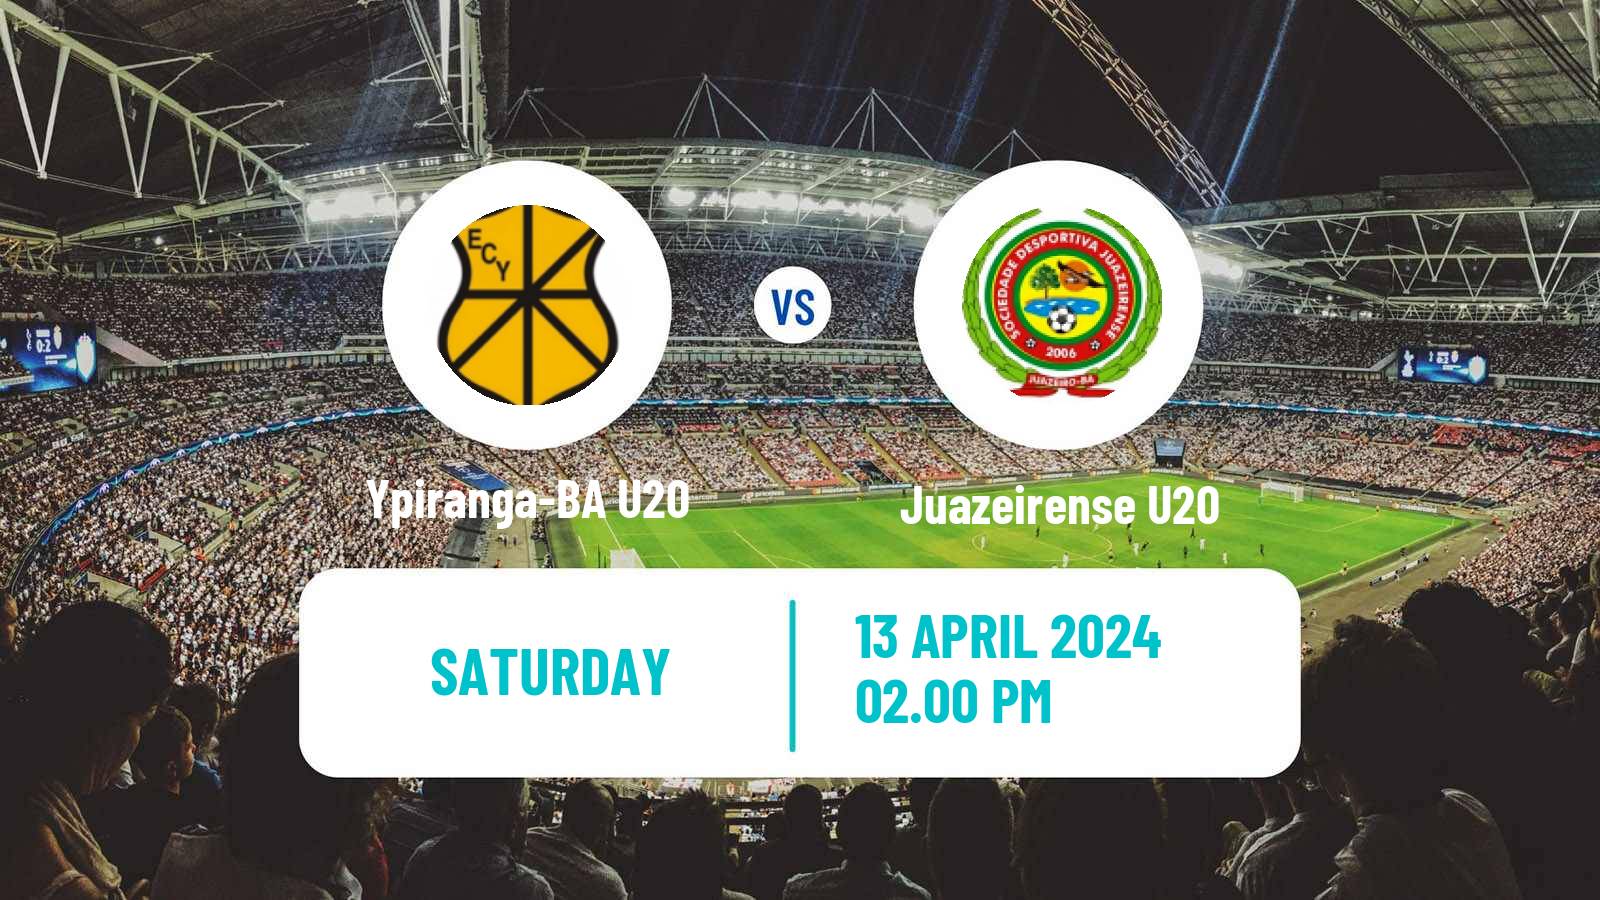 Soccer Brazilian Baiano U20 Ypiranga-BA U20 - Juazeirense U20